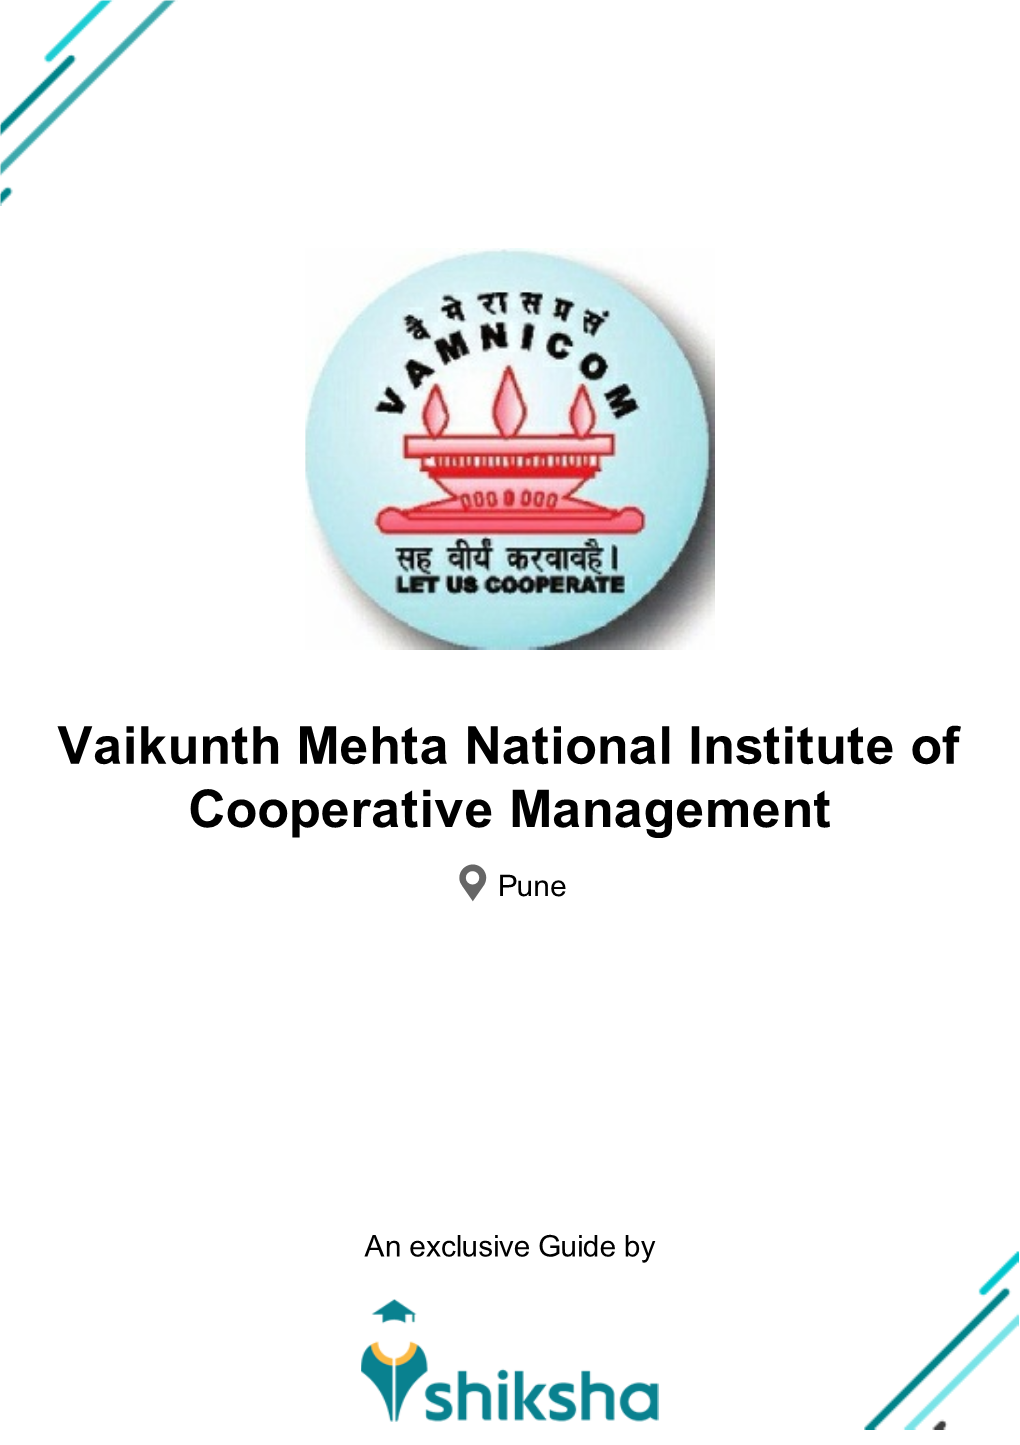 Vaikunth Mehta National Institute of Cooperative Management